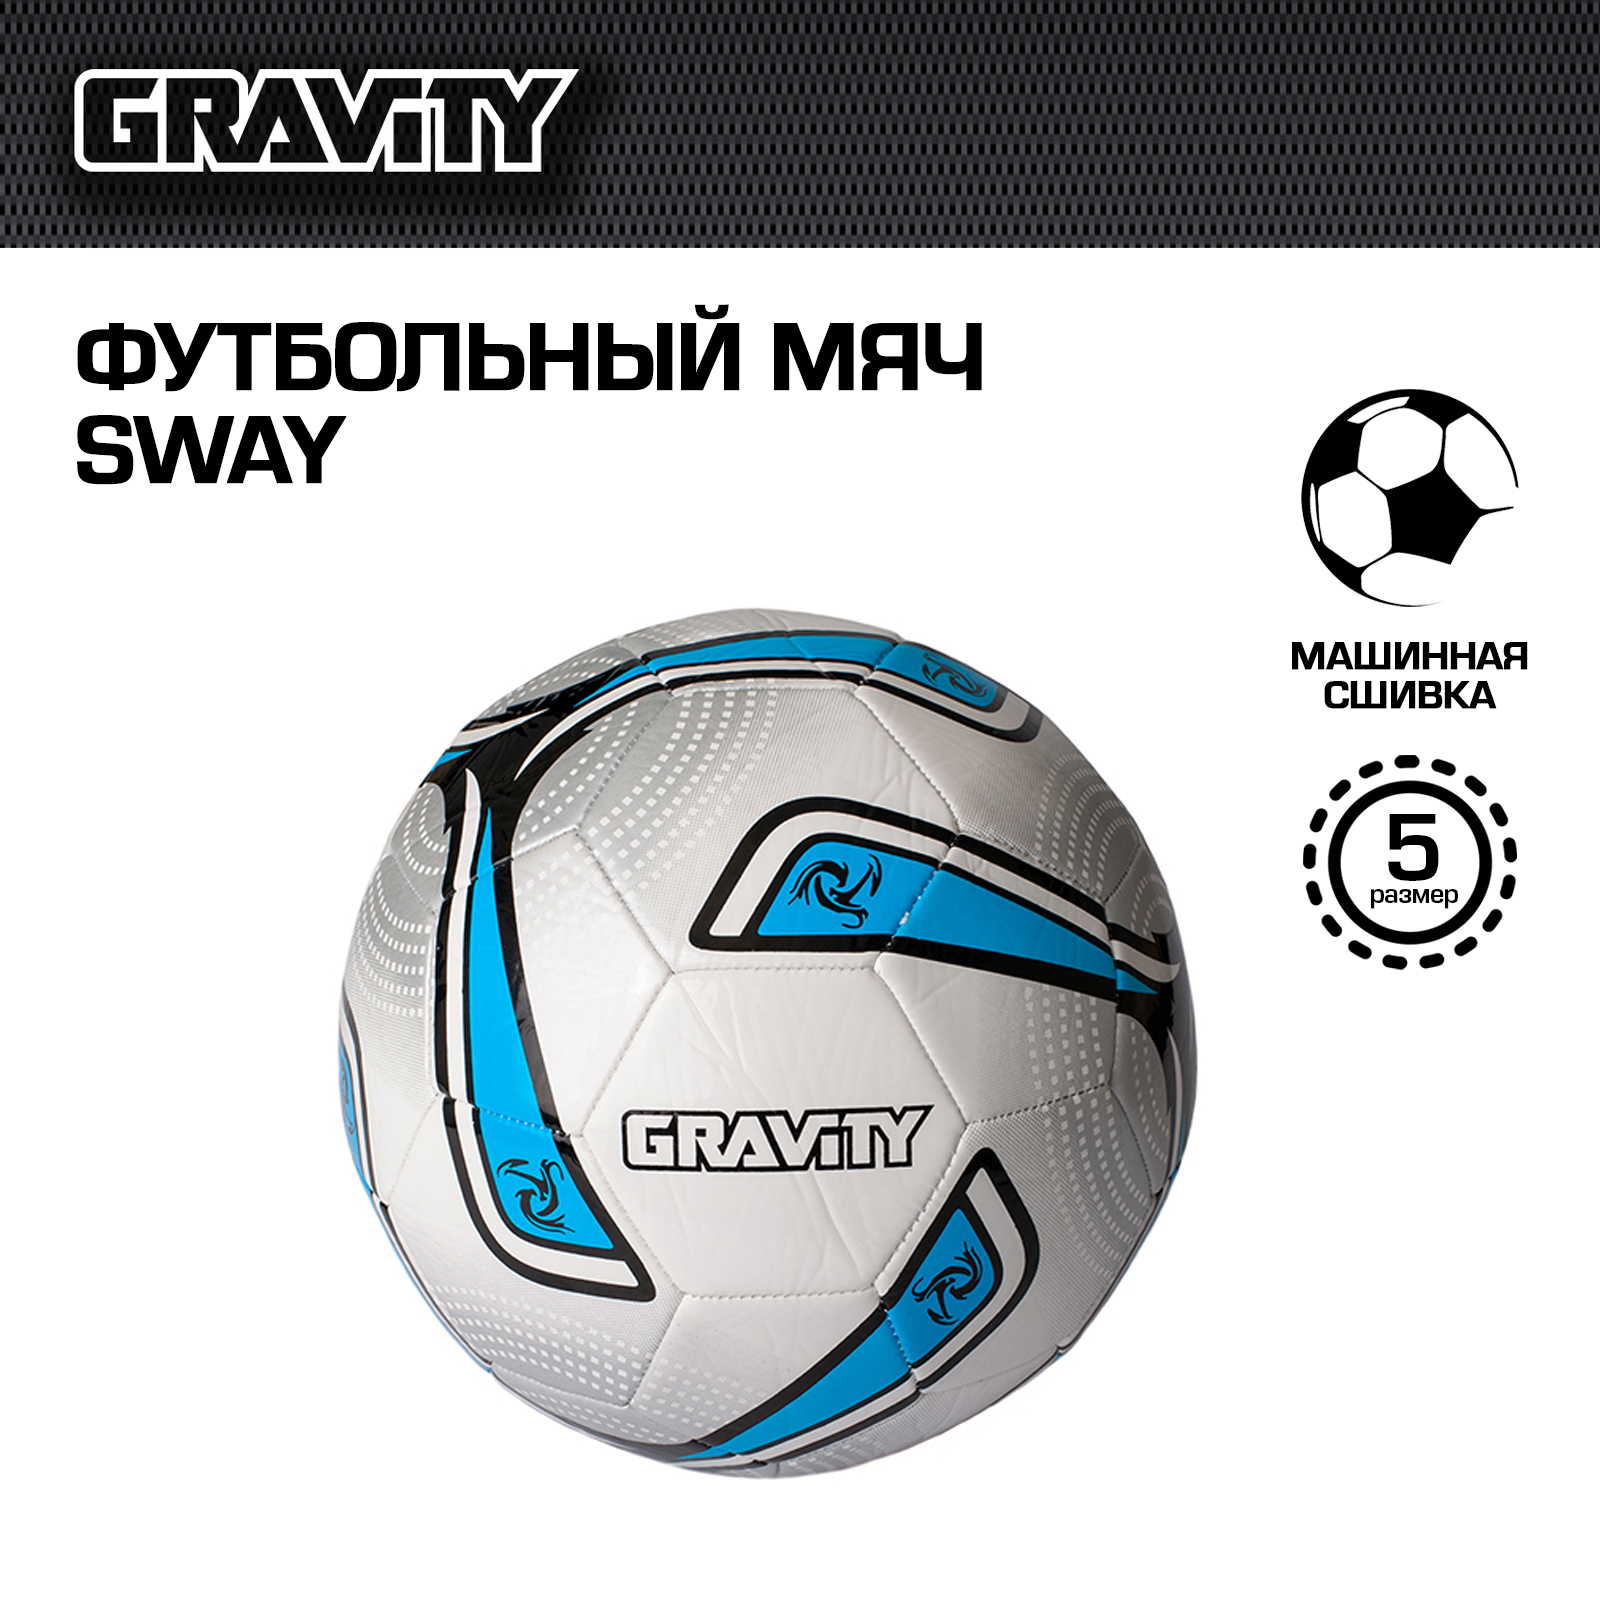 Футбольный мяч Gravity, машинная сшивка, SWAY